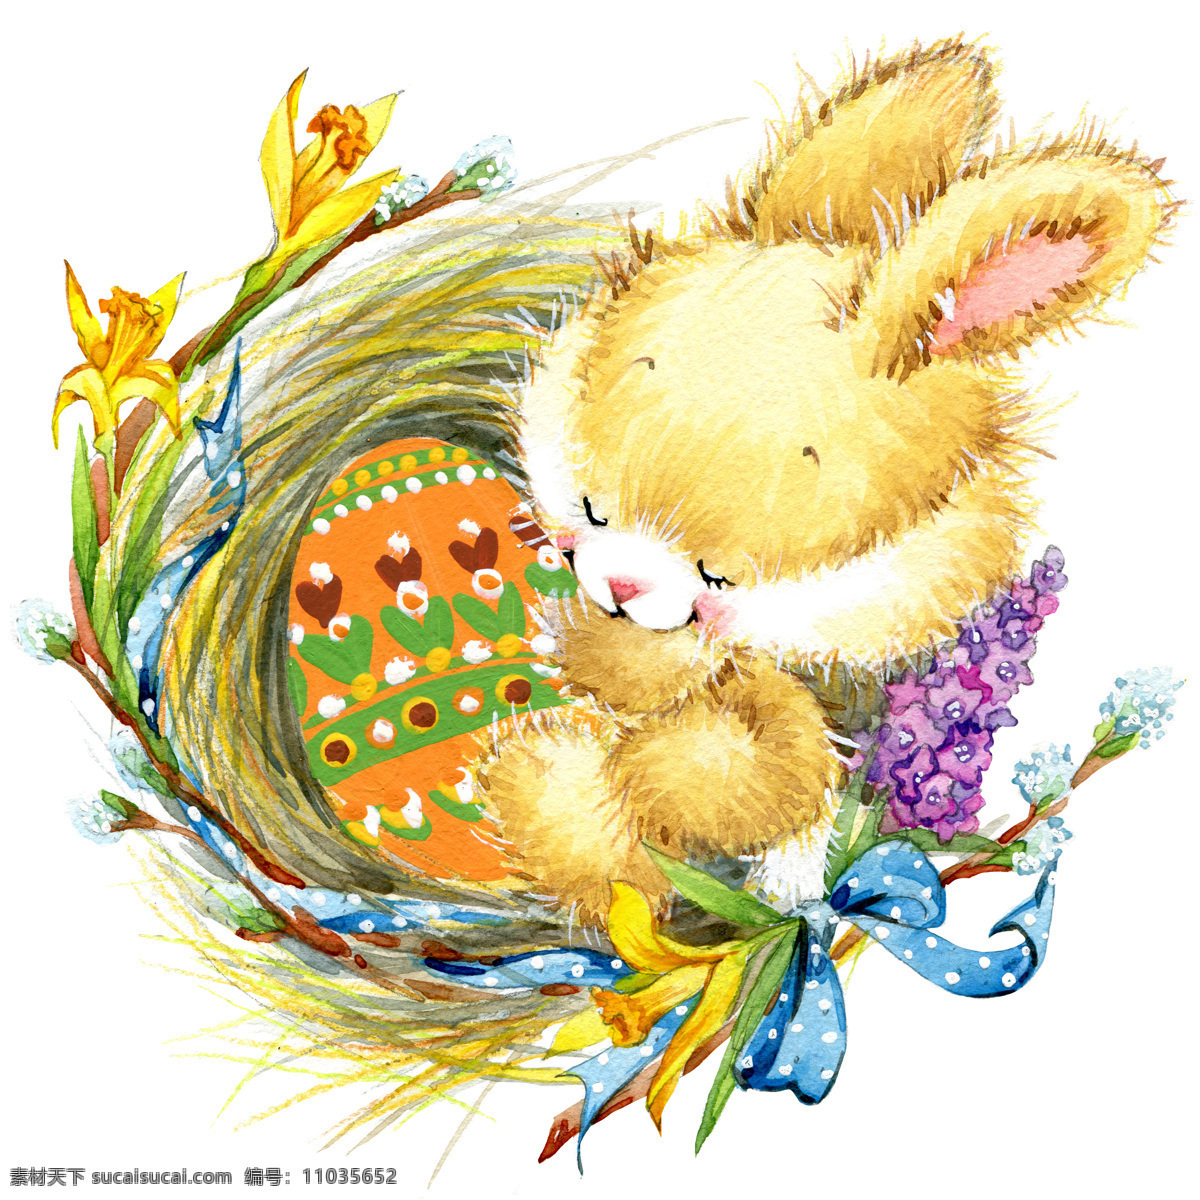 水彩 兔子 插画 卡通兔子 水彩画 复活节彩蛋 复活节快乐 复活节素材 节日庆典 生活百科